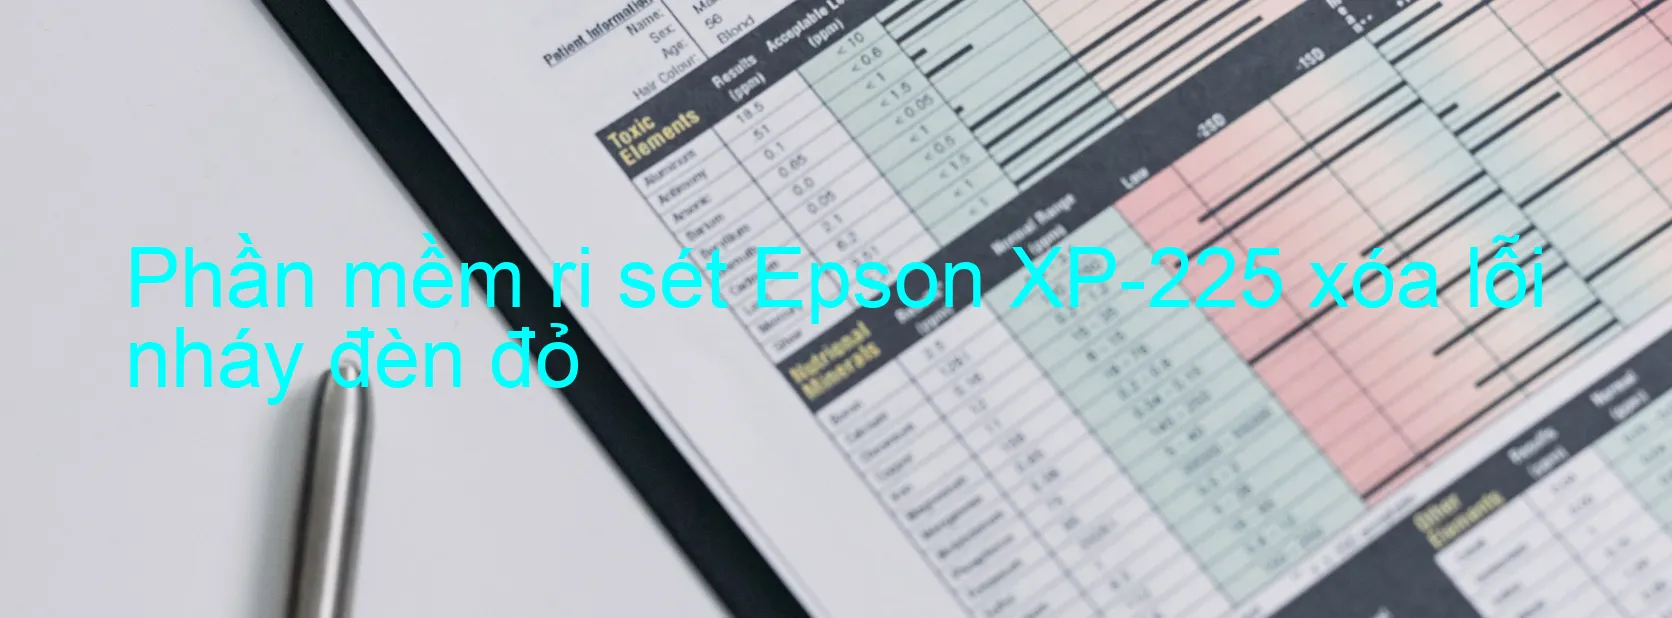 Phần mềm reset Epson XP-225 xóa lỗi nháy đèn đỏ